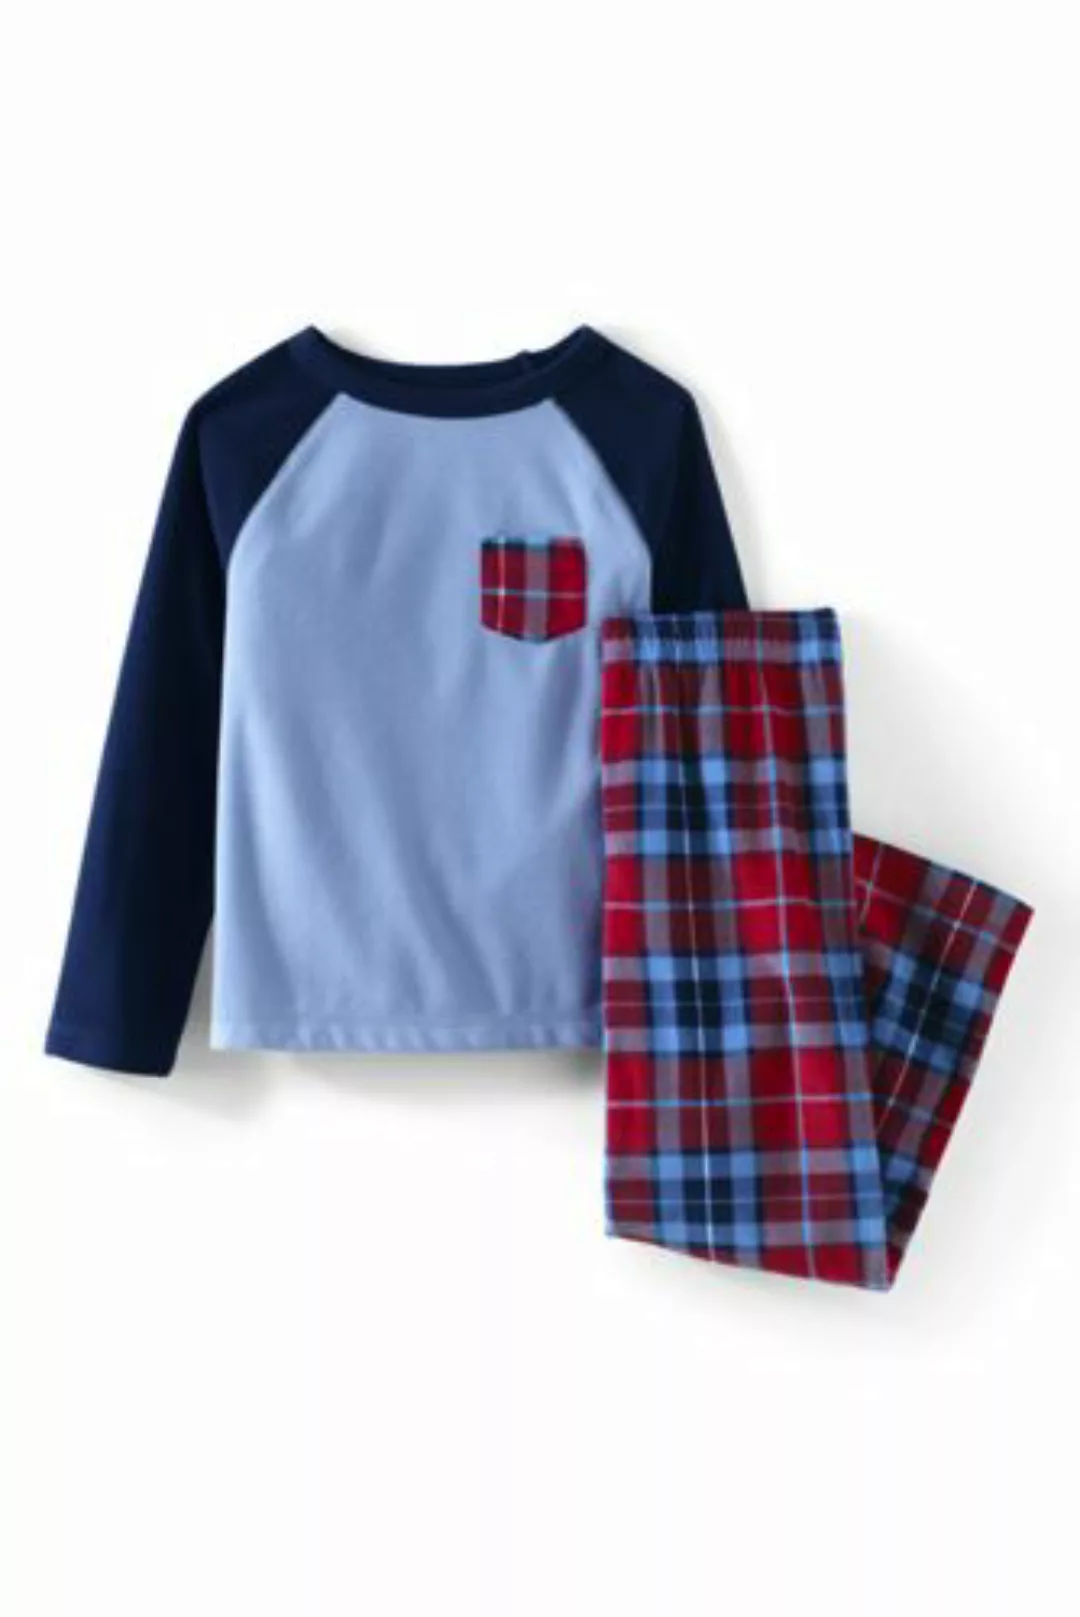 Pyjama-Set aus Fleece, Größe: 152-158, Rot, by Lands' End, Satt Rot Multi K günstig online kaufen